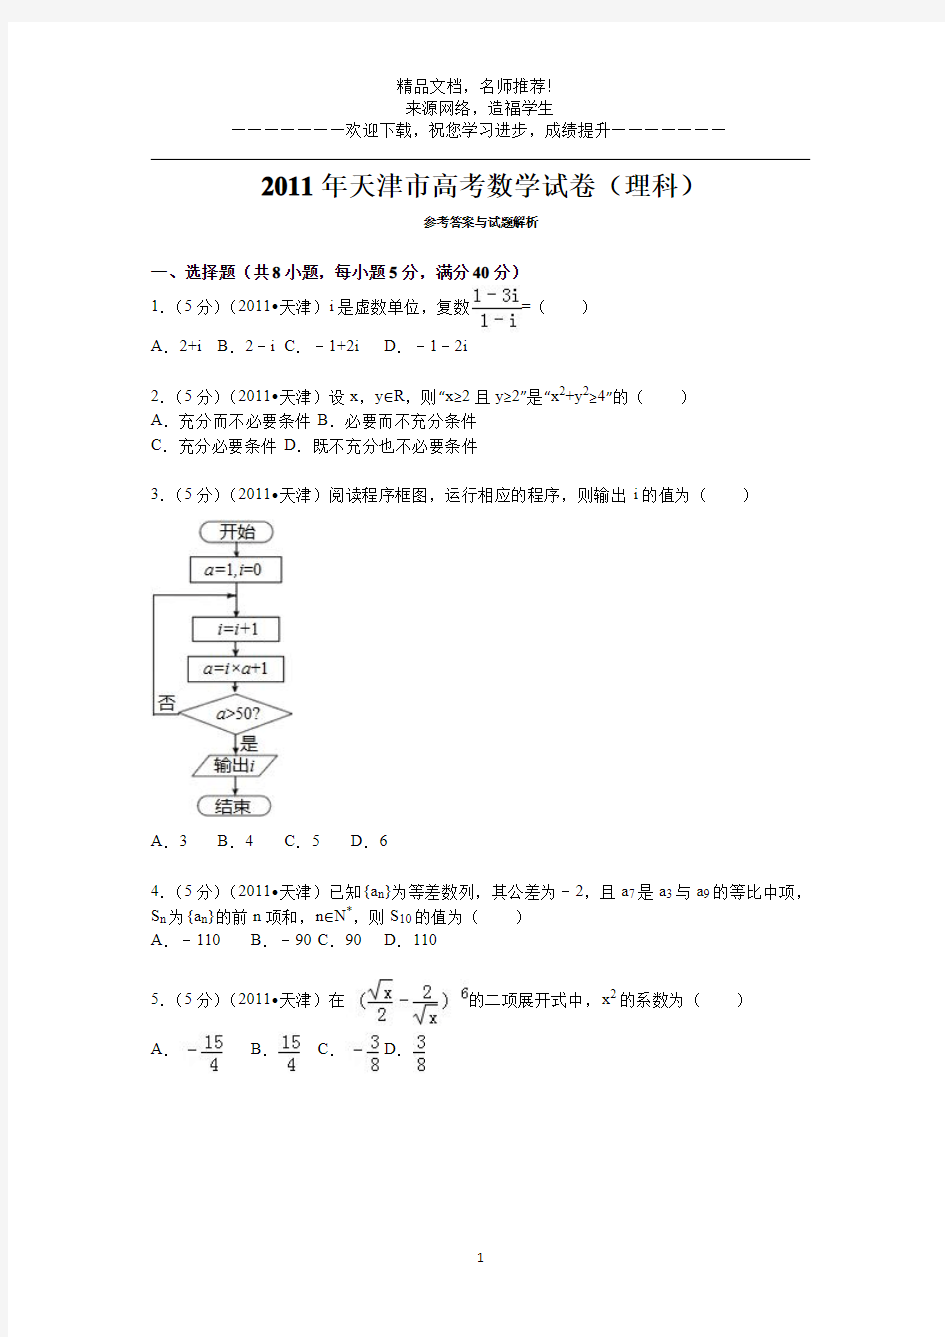 2011年高考真题——理科数学(天津卷)